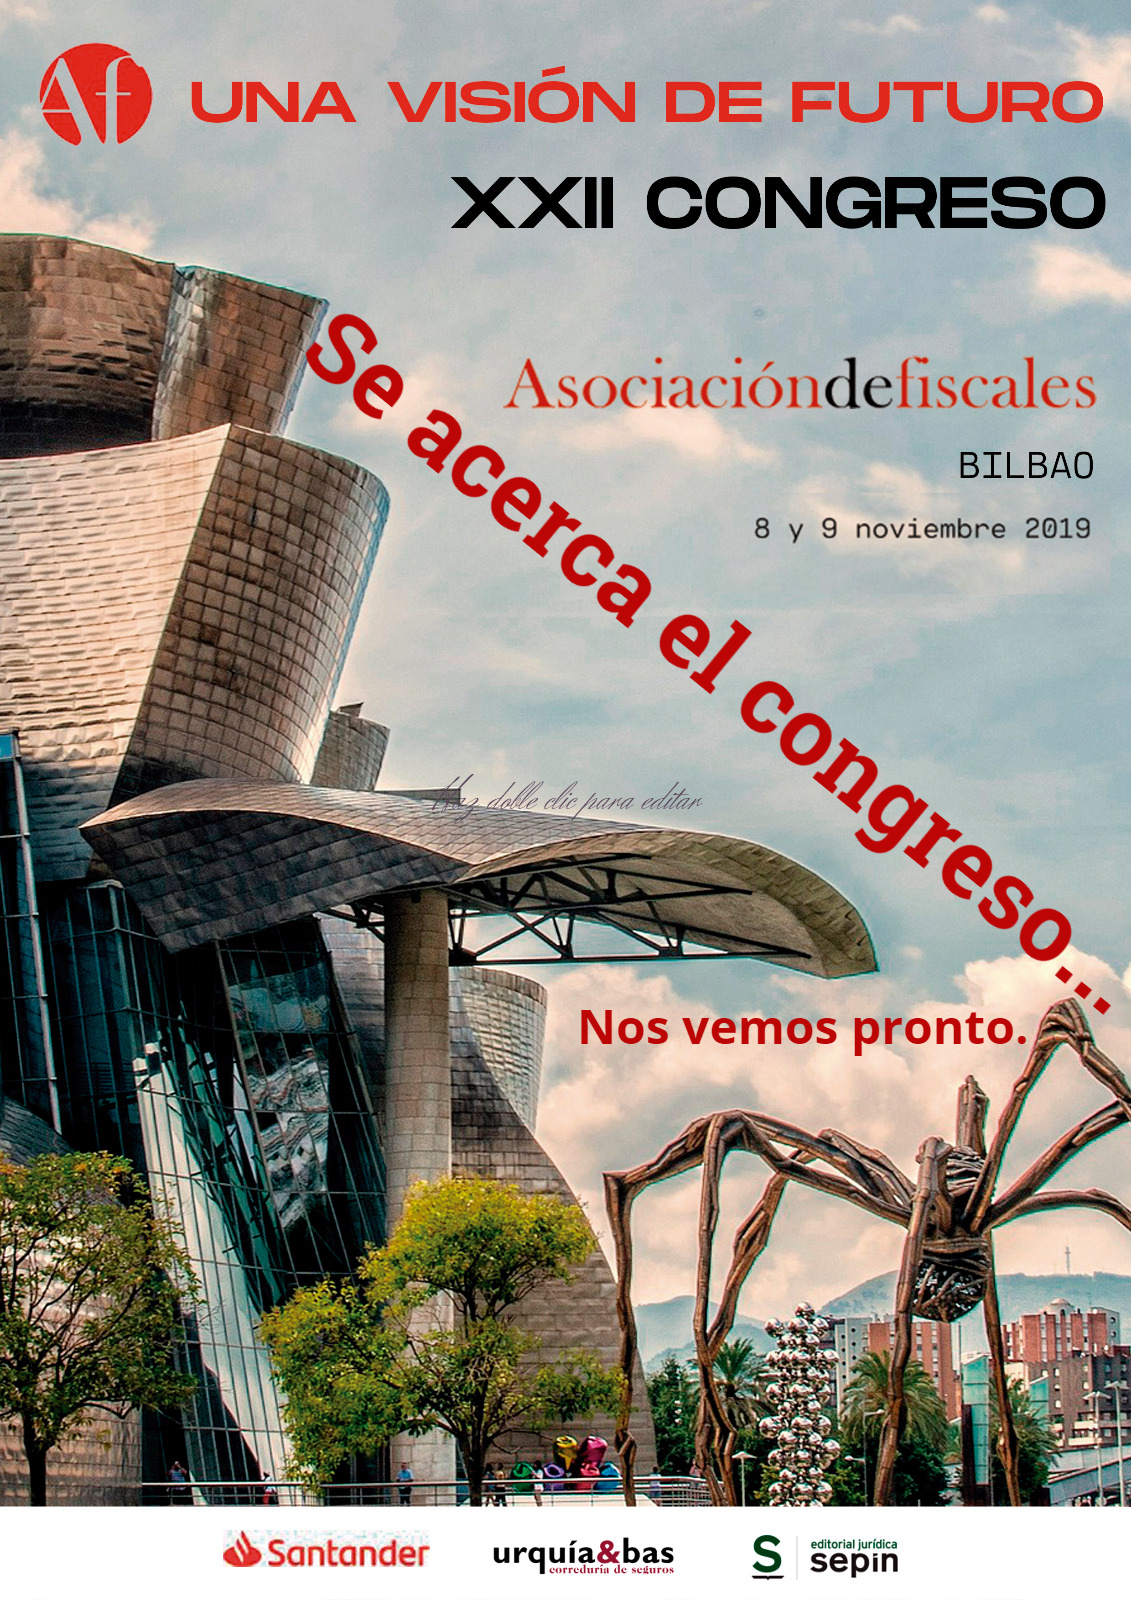 XXII Congreso de la Asociación de Fiscales. "Una visión de futuro". Bilbao 8 y 9 de Noviembre.